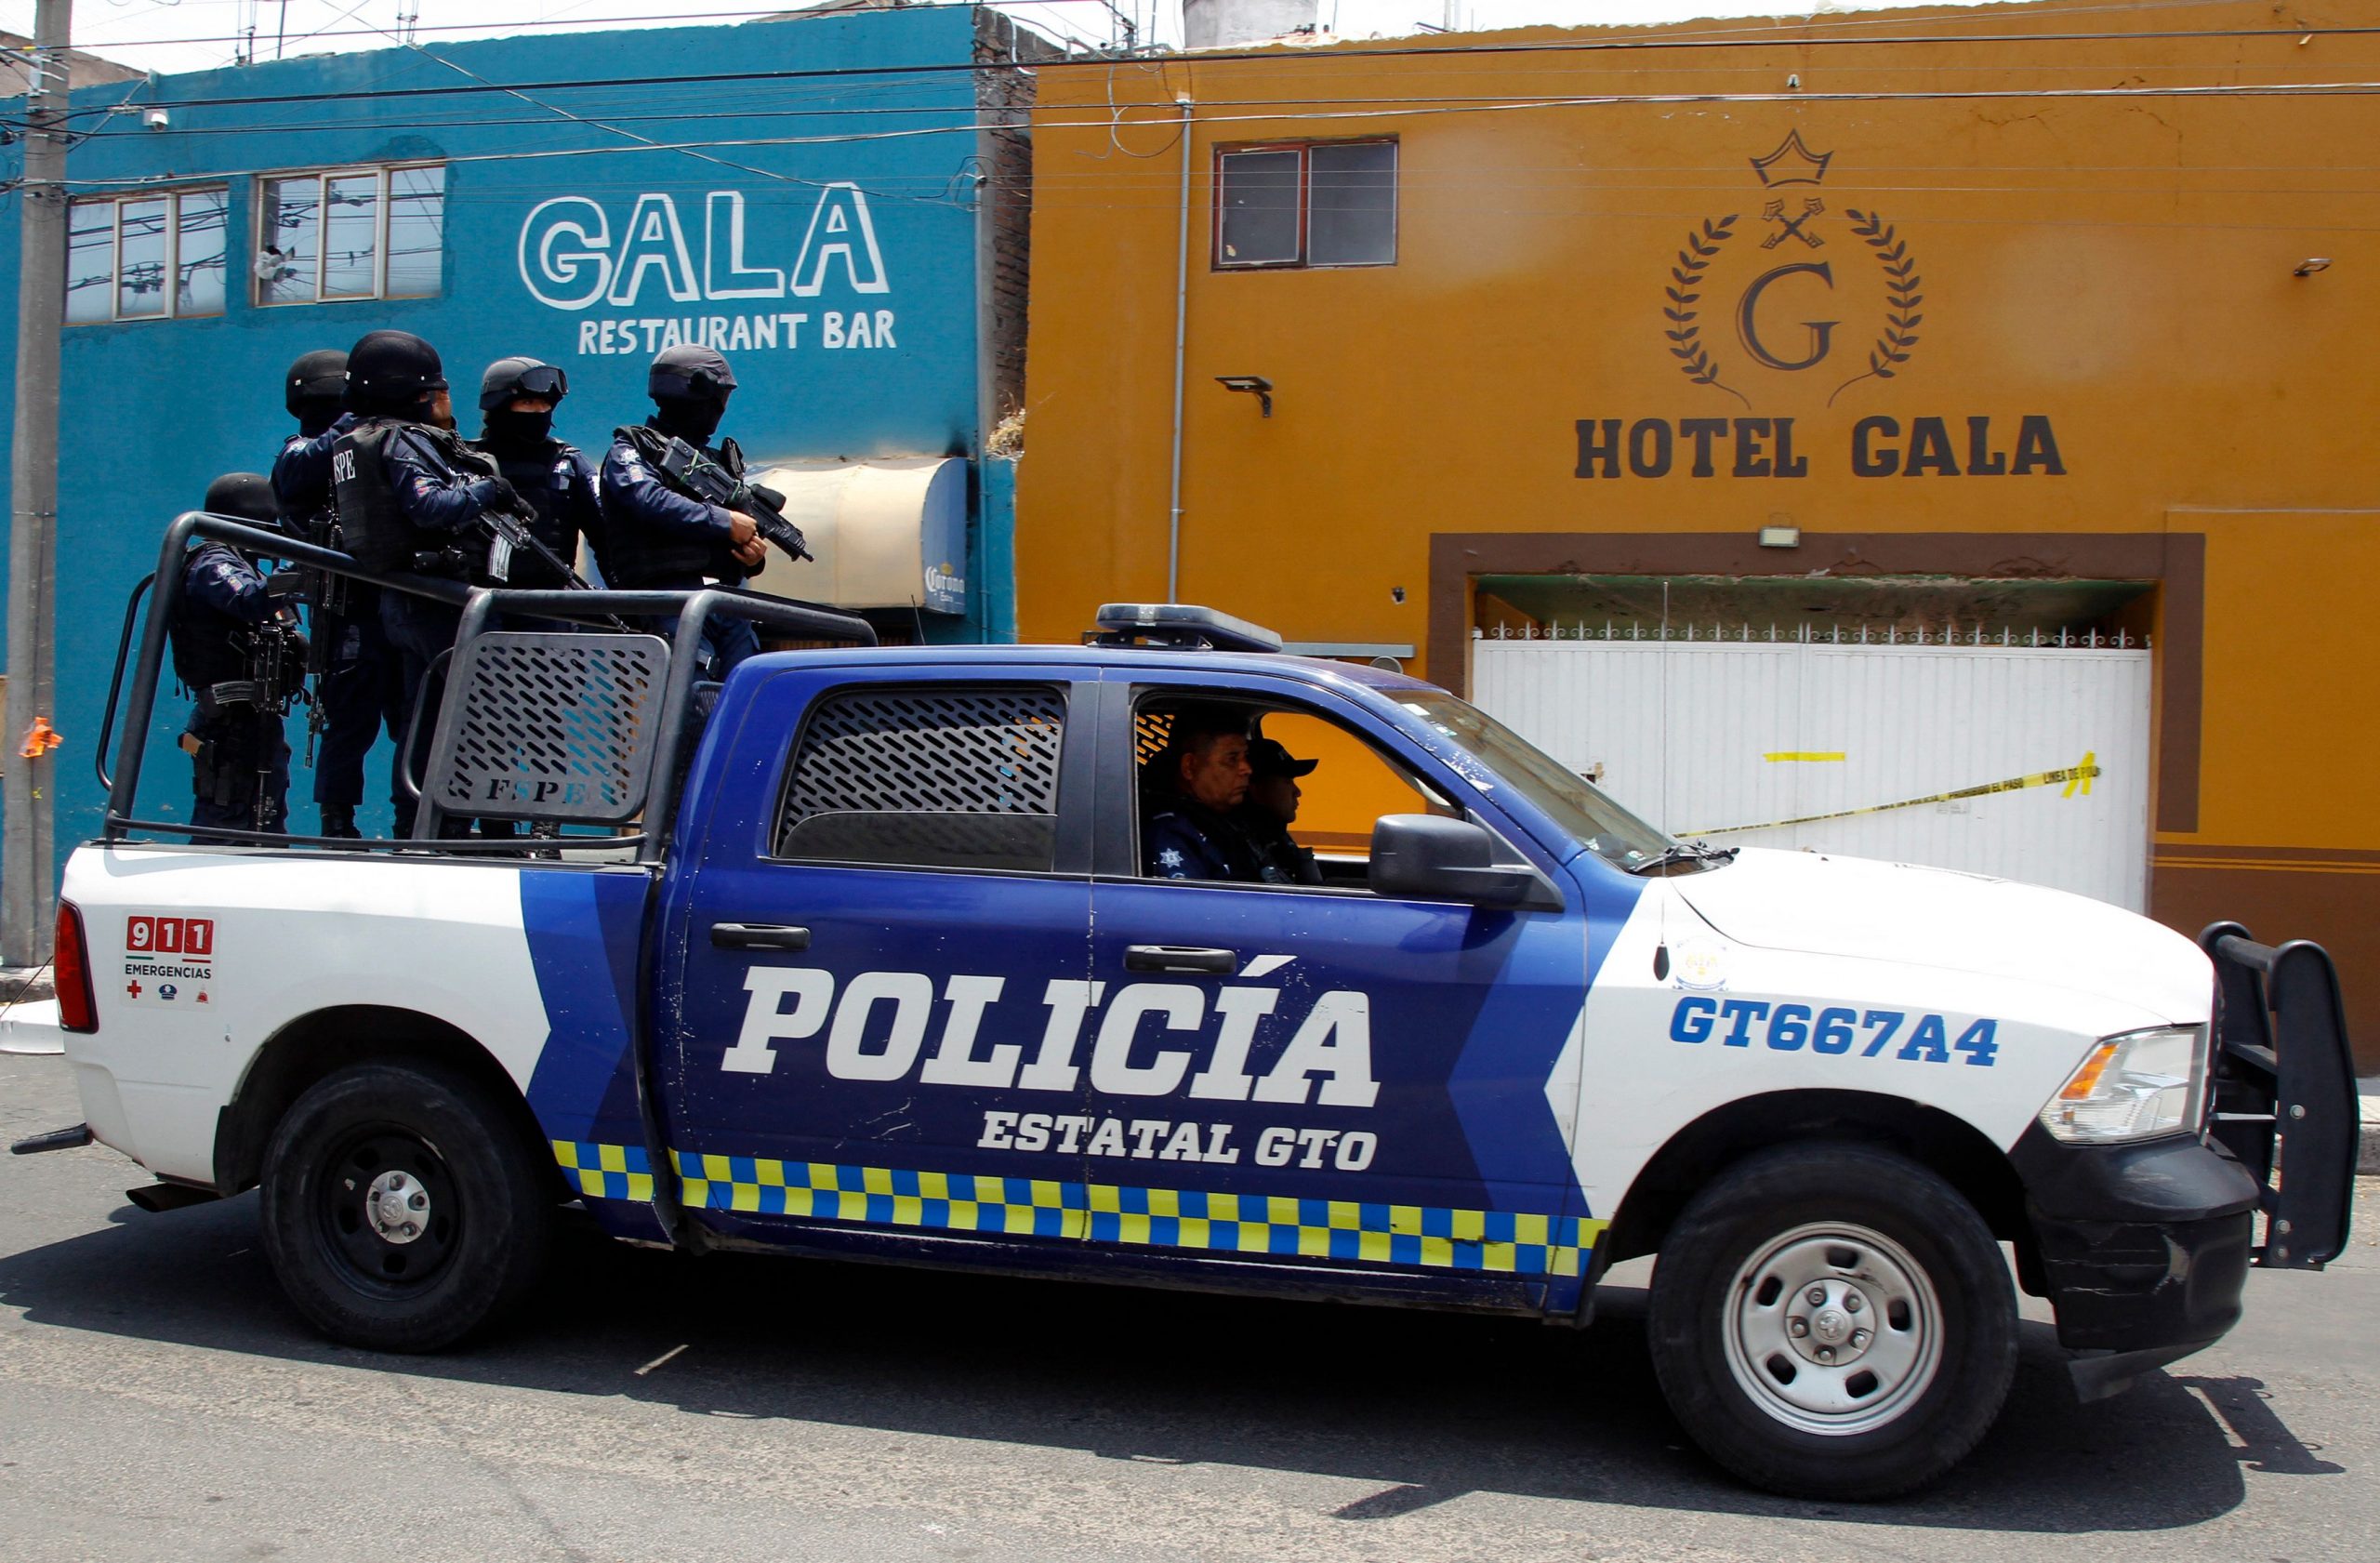 墨西哥中部旅馆酒吧遭枪击11死 黑帮留名片认干案